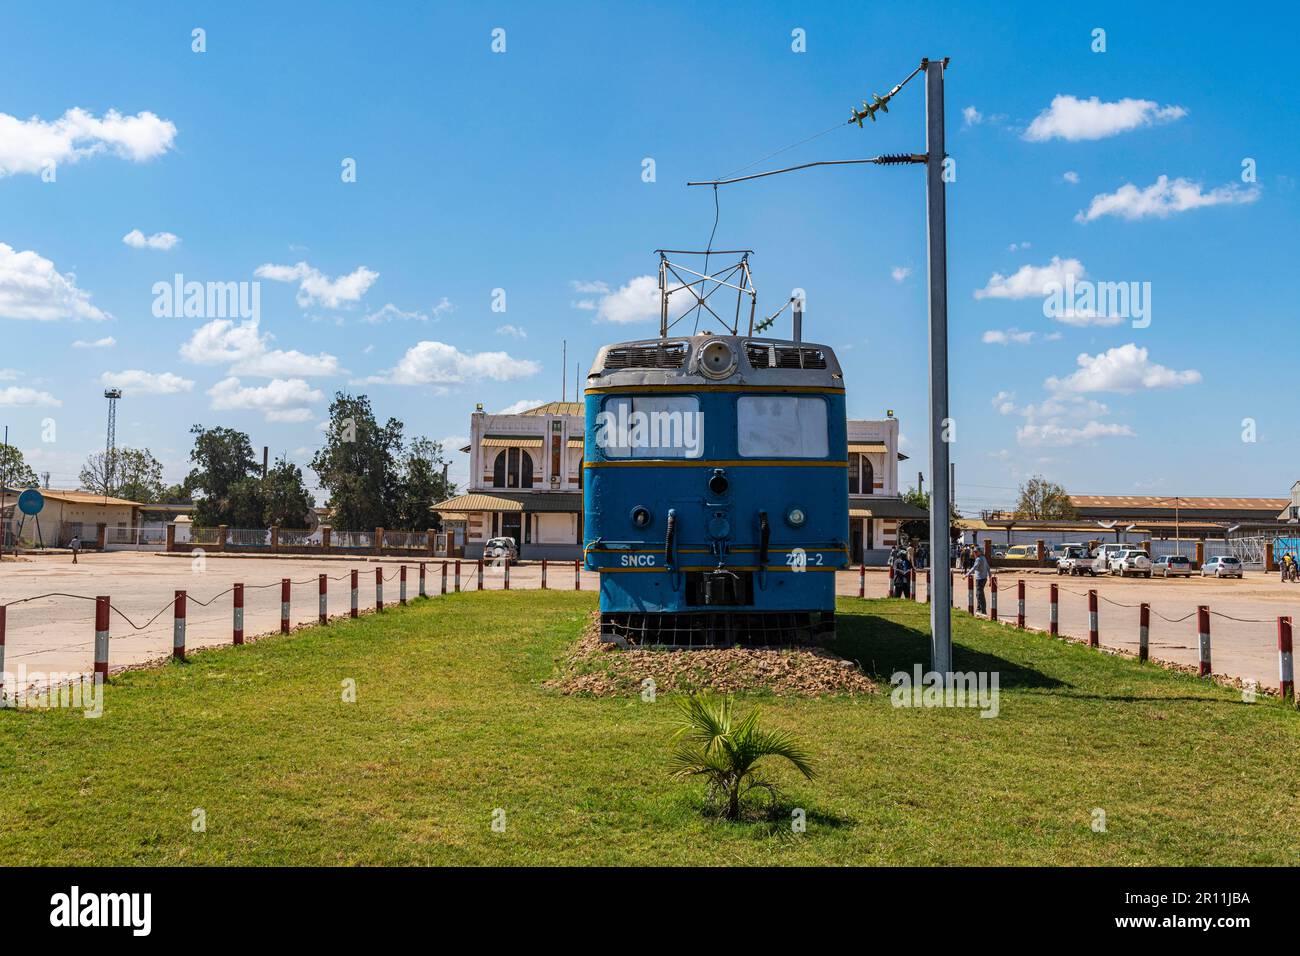 Bahnhof von Lubumbashi, DR Kongo Stockfoto